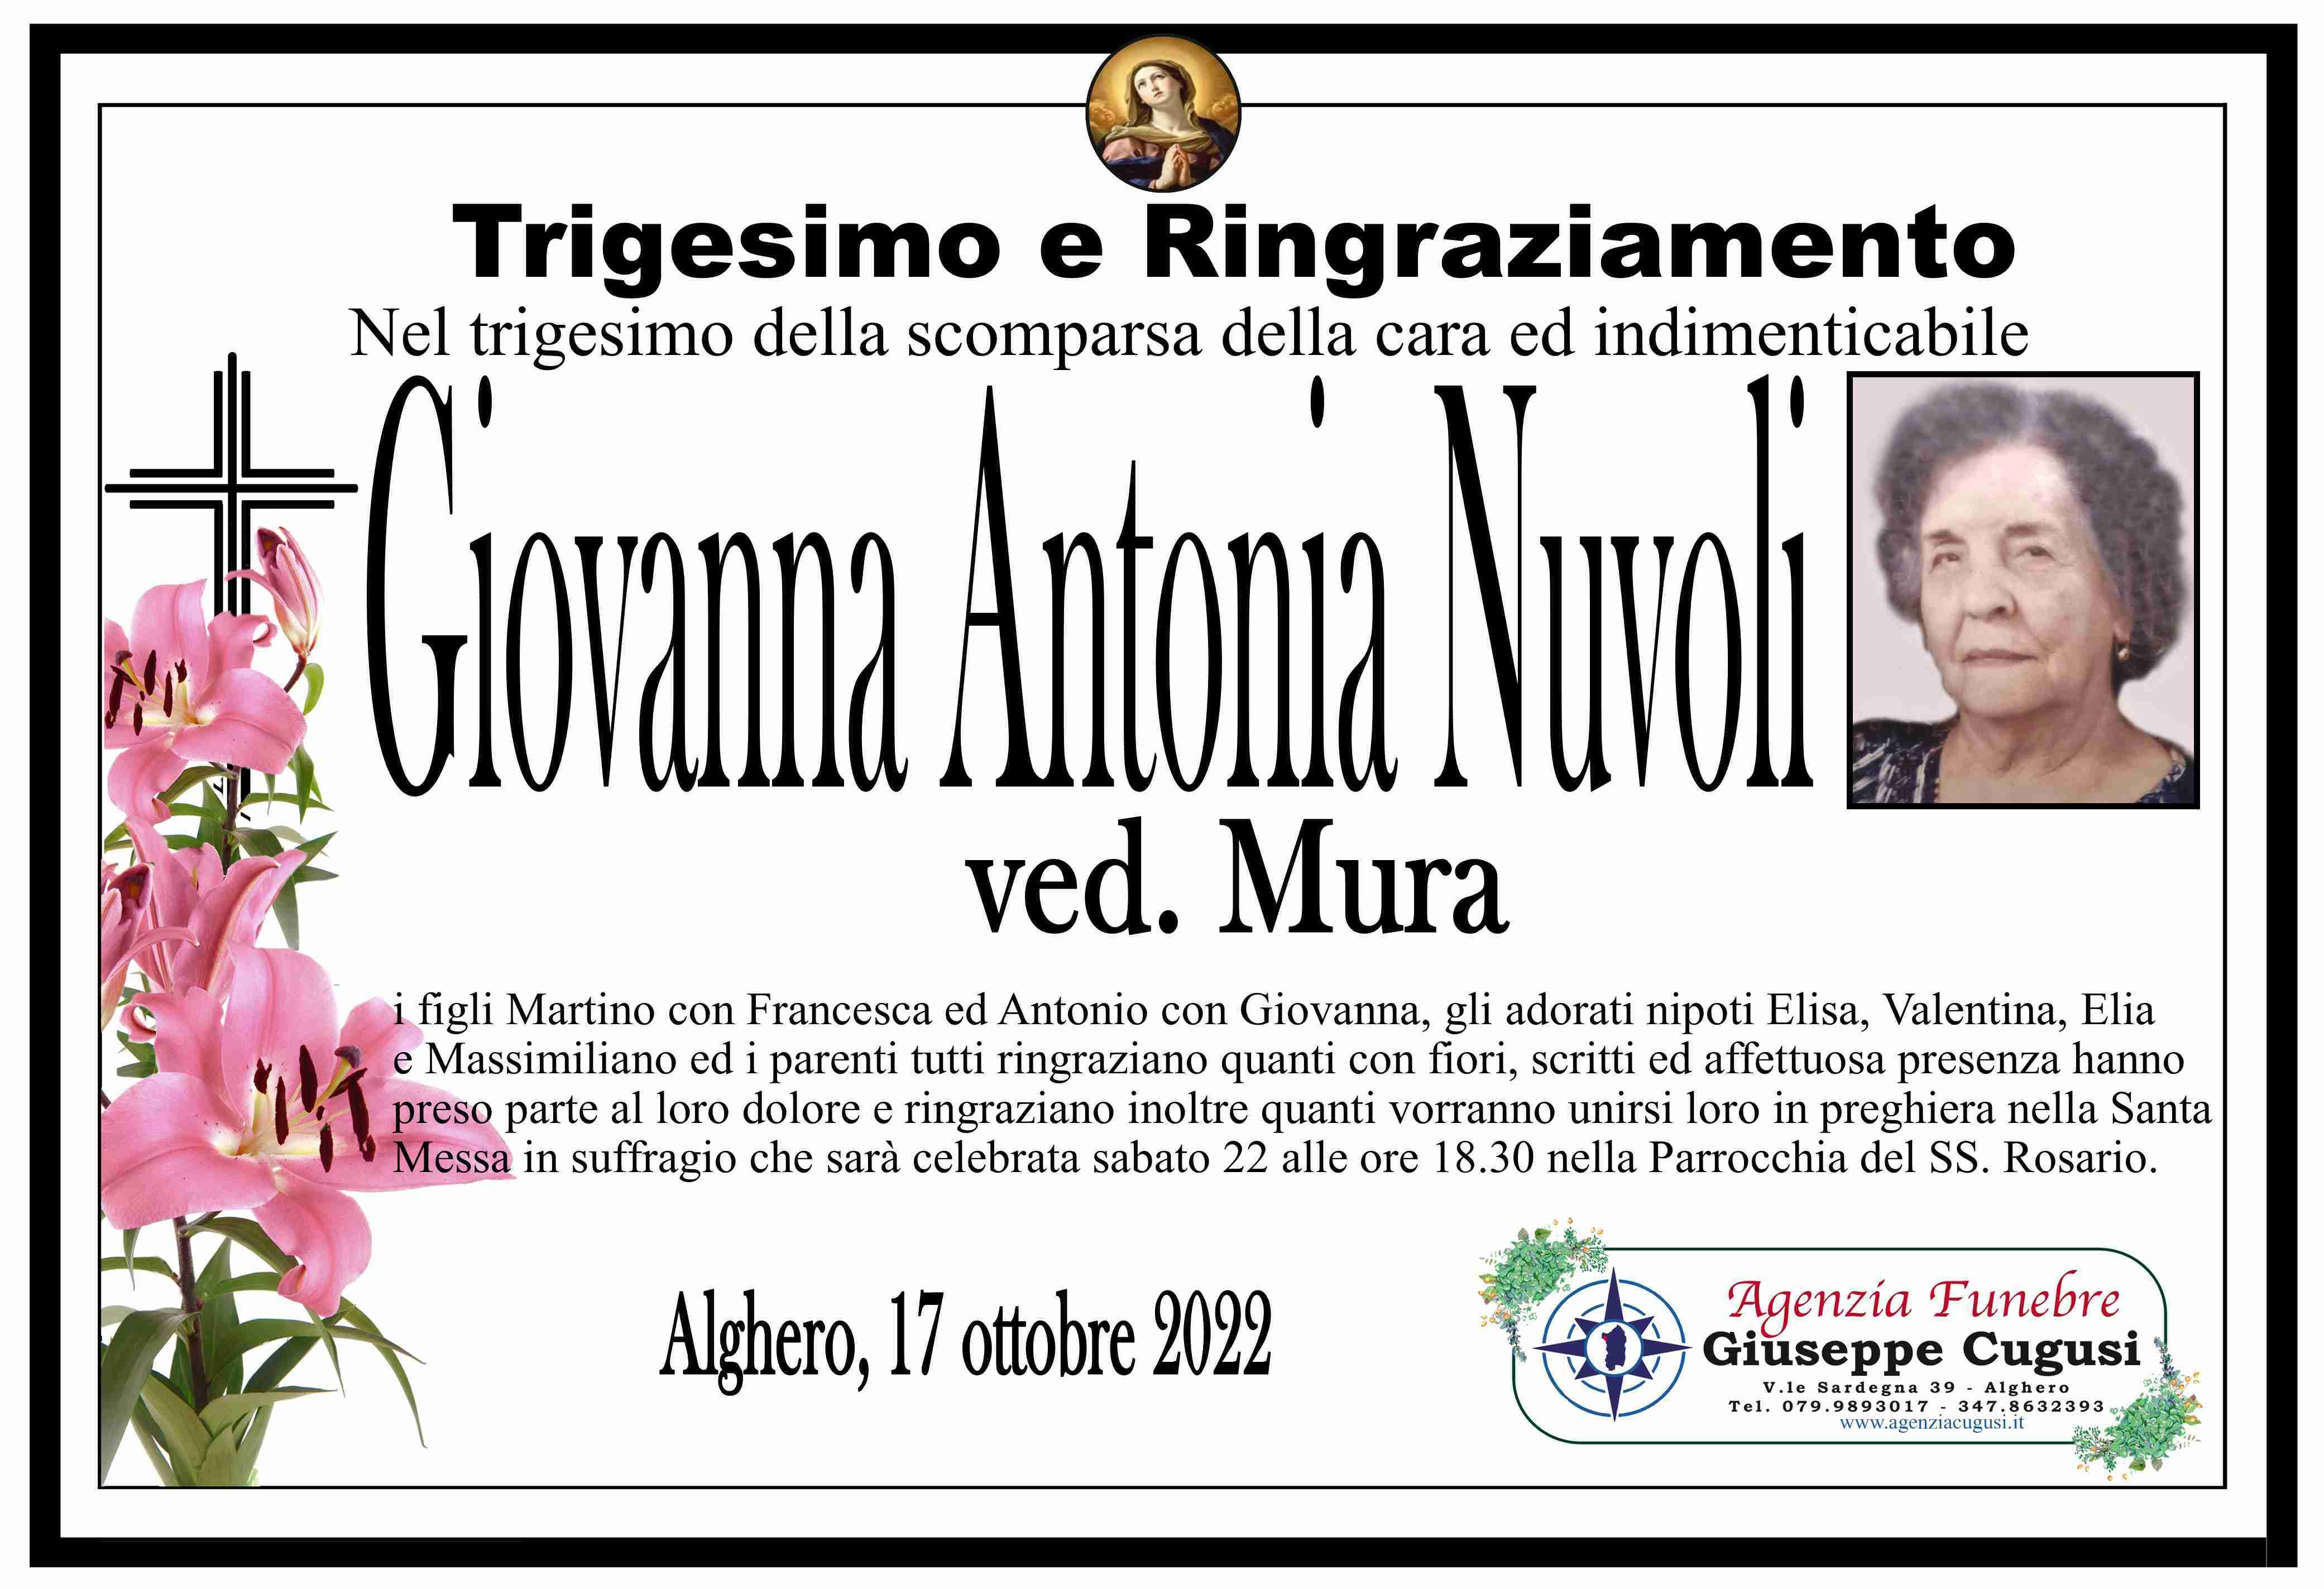 Giovanna Antonia Nuvoli